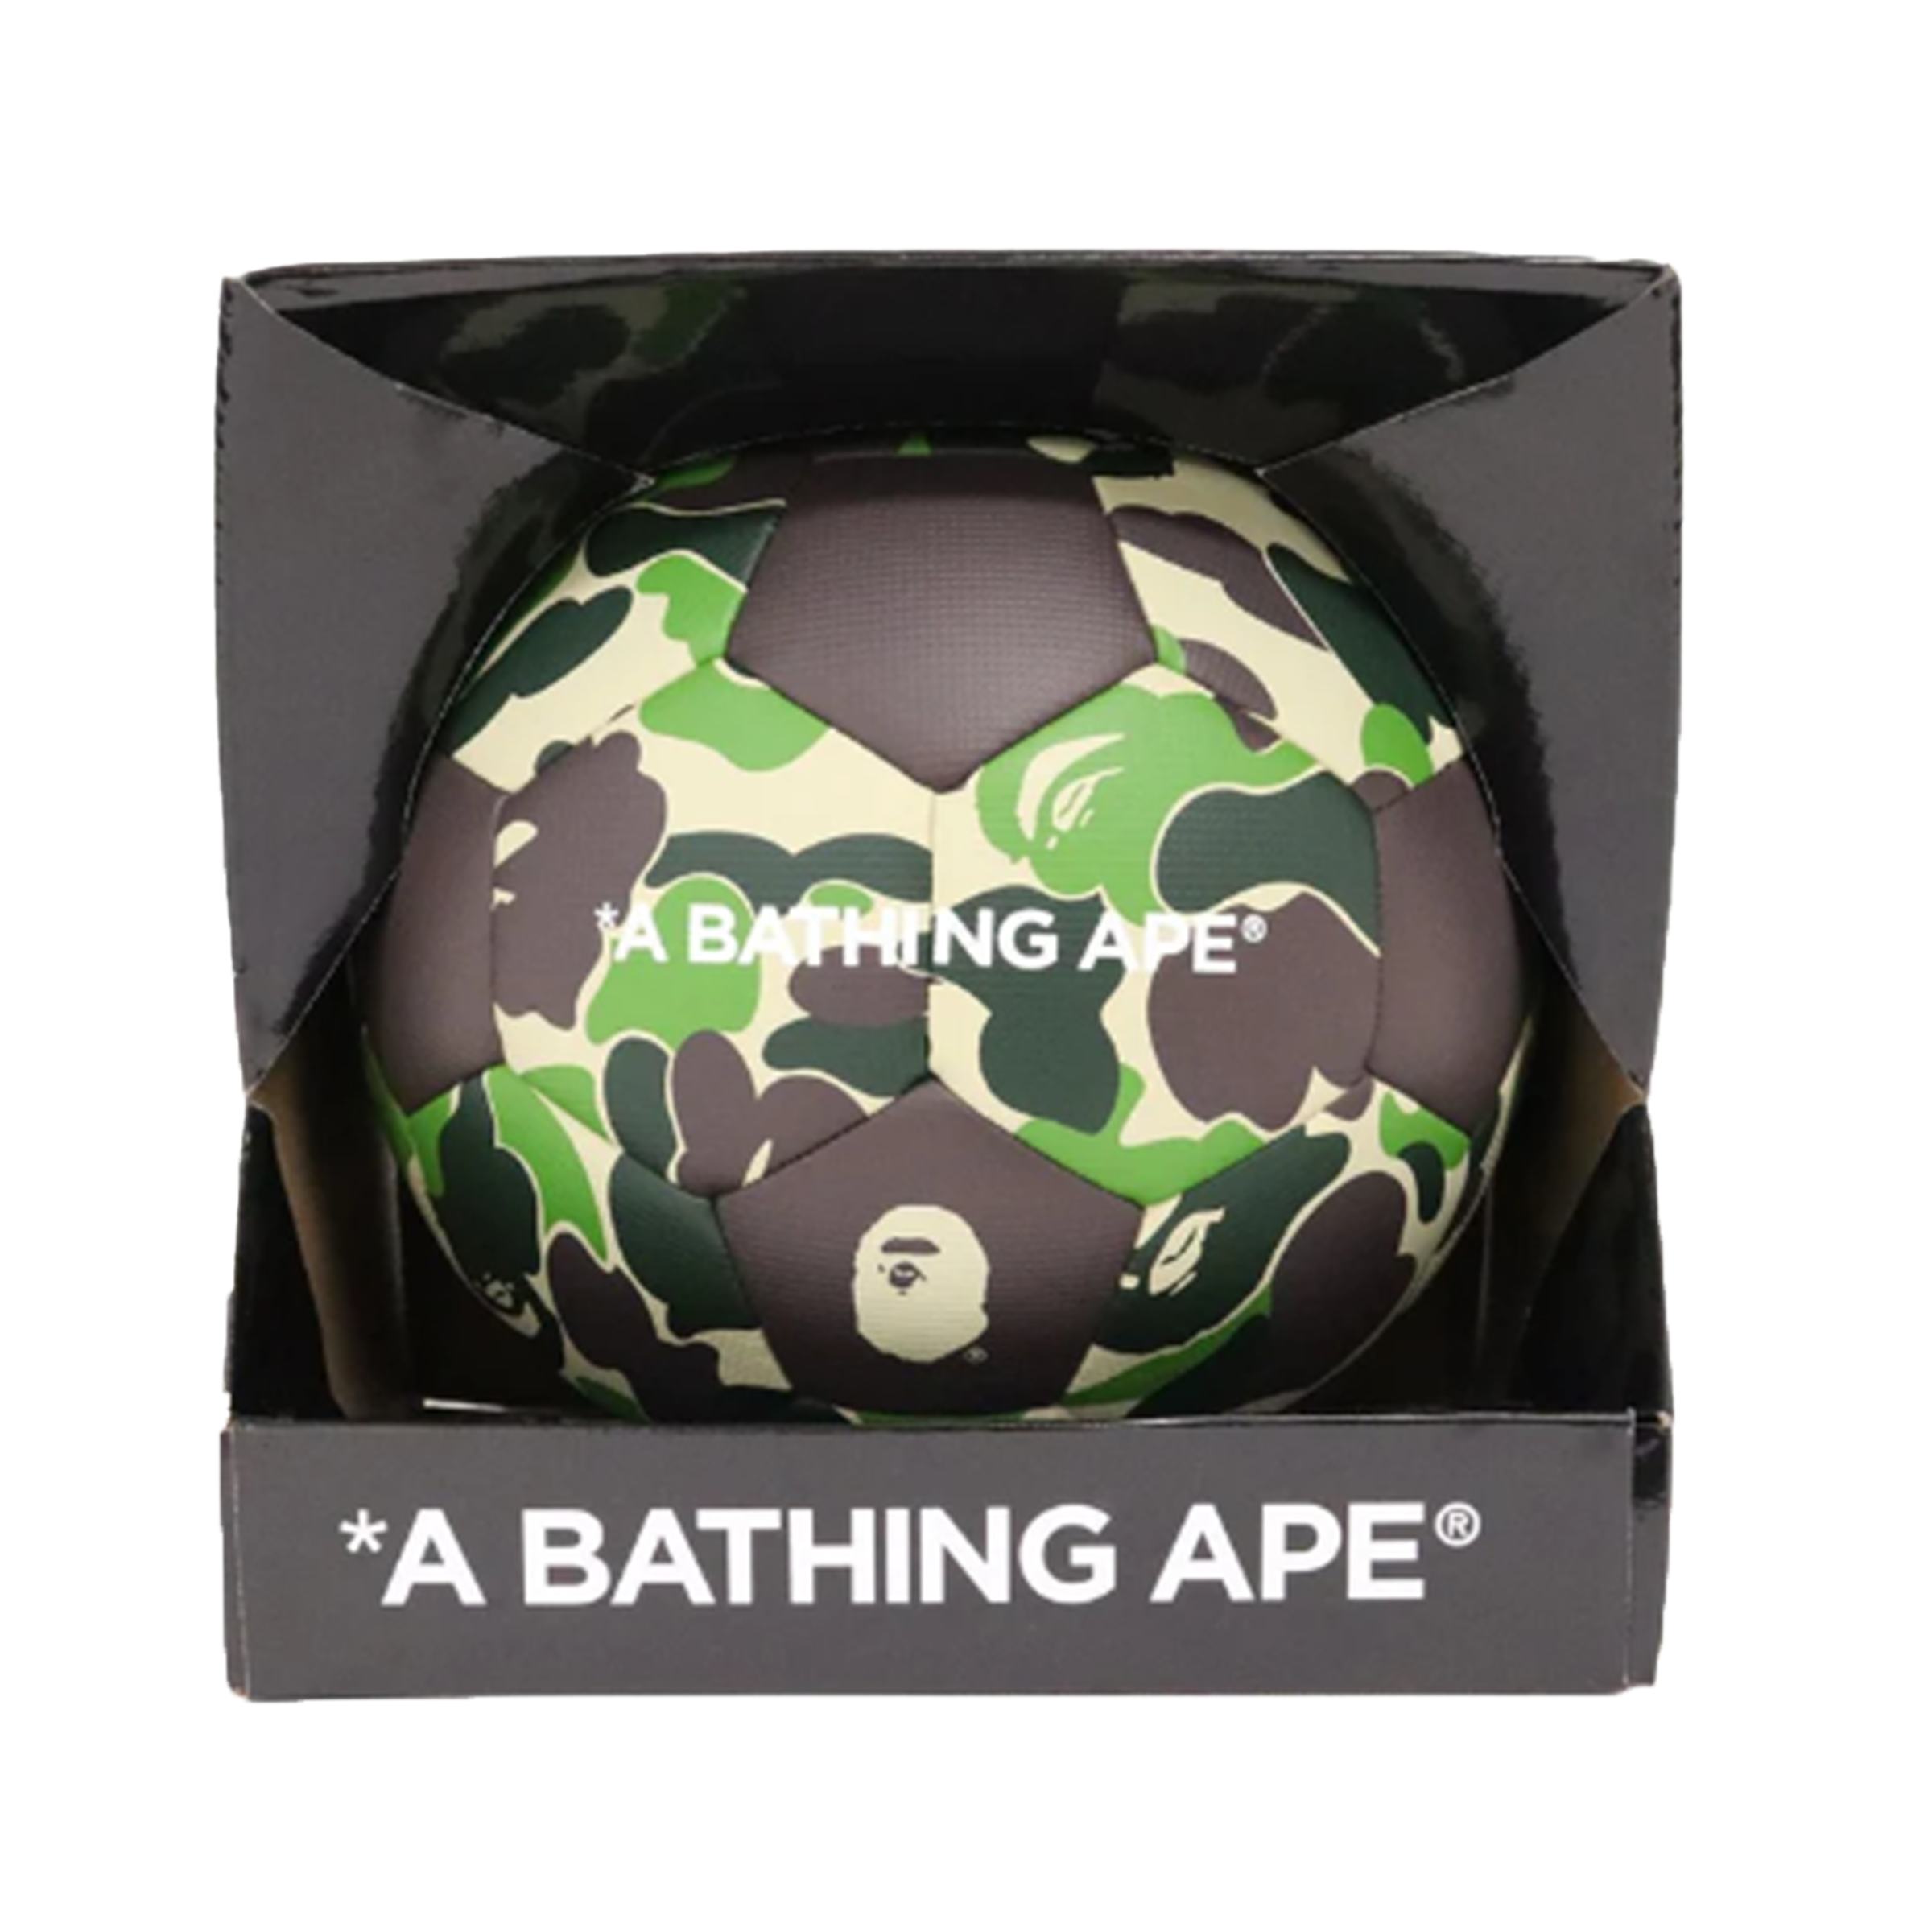 A Bathing Ape ABC Camo Soccer Ball